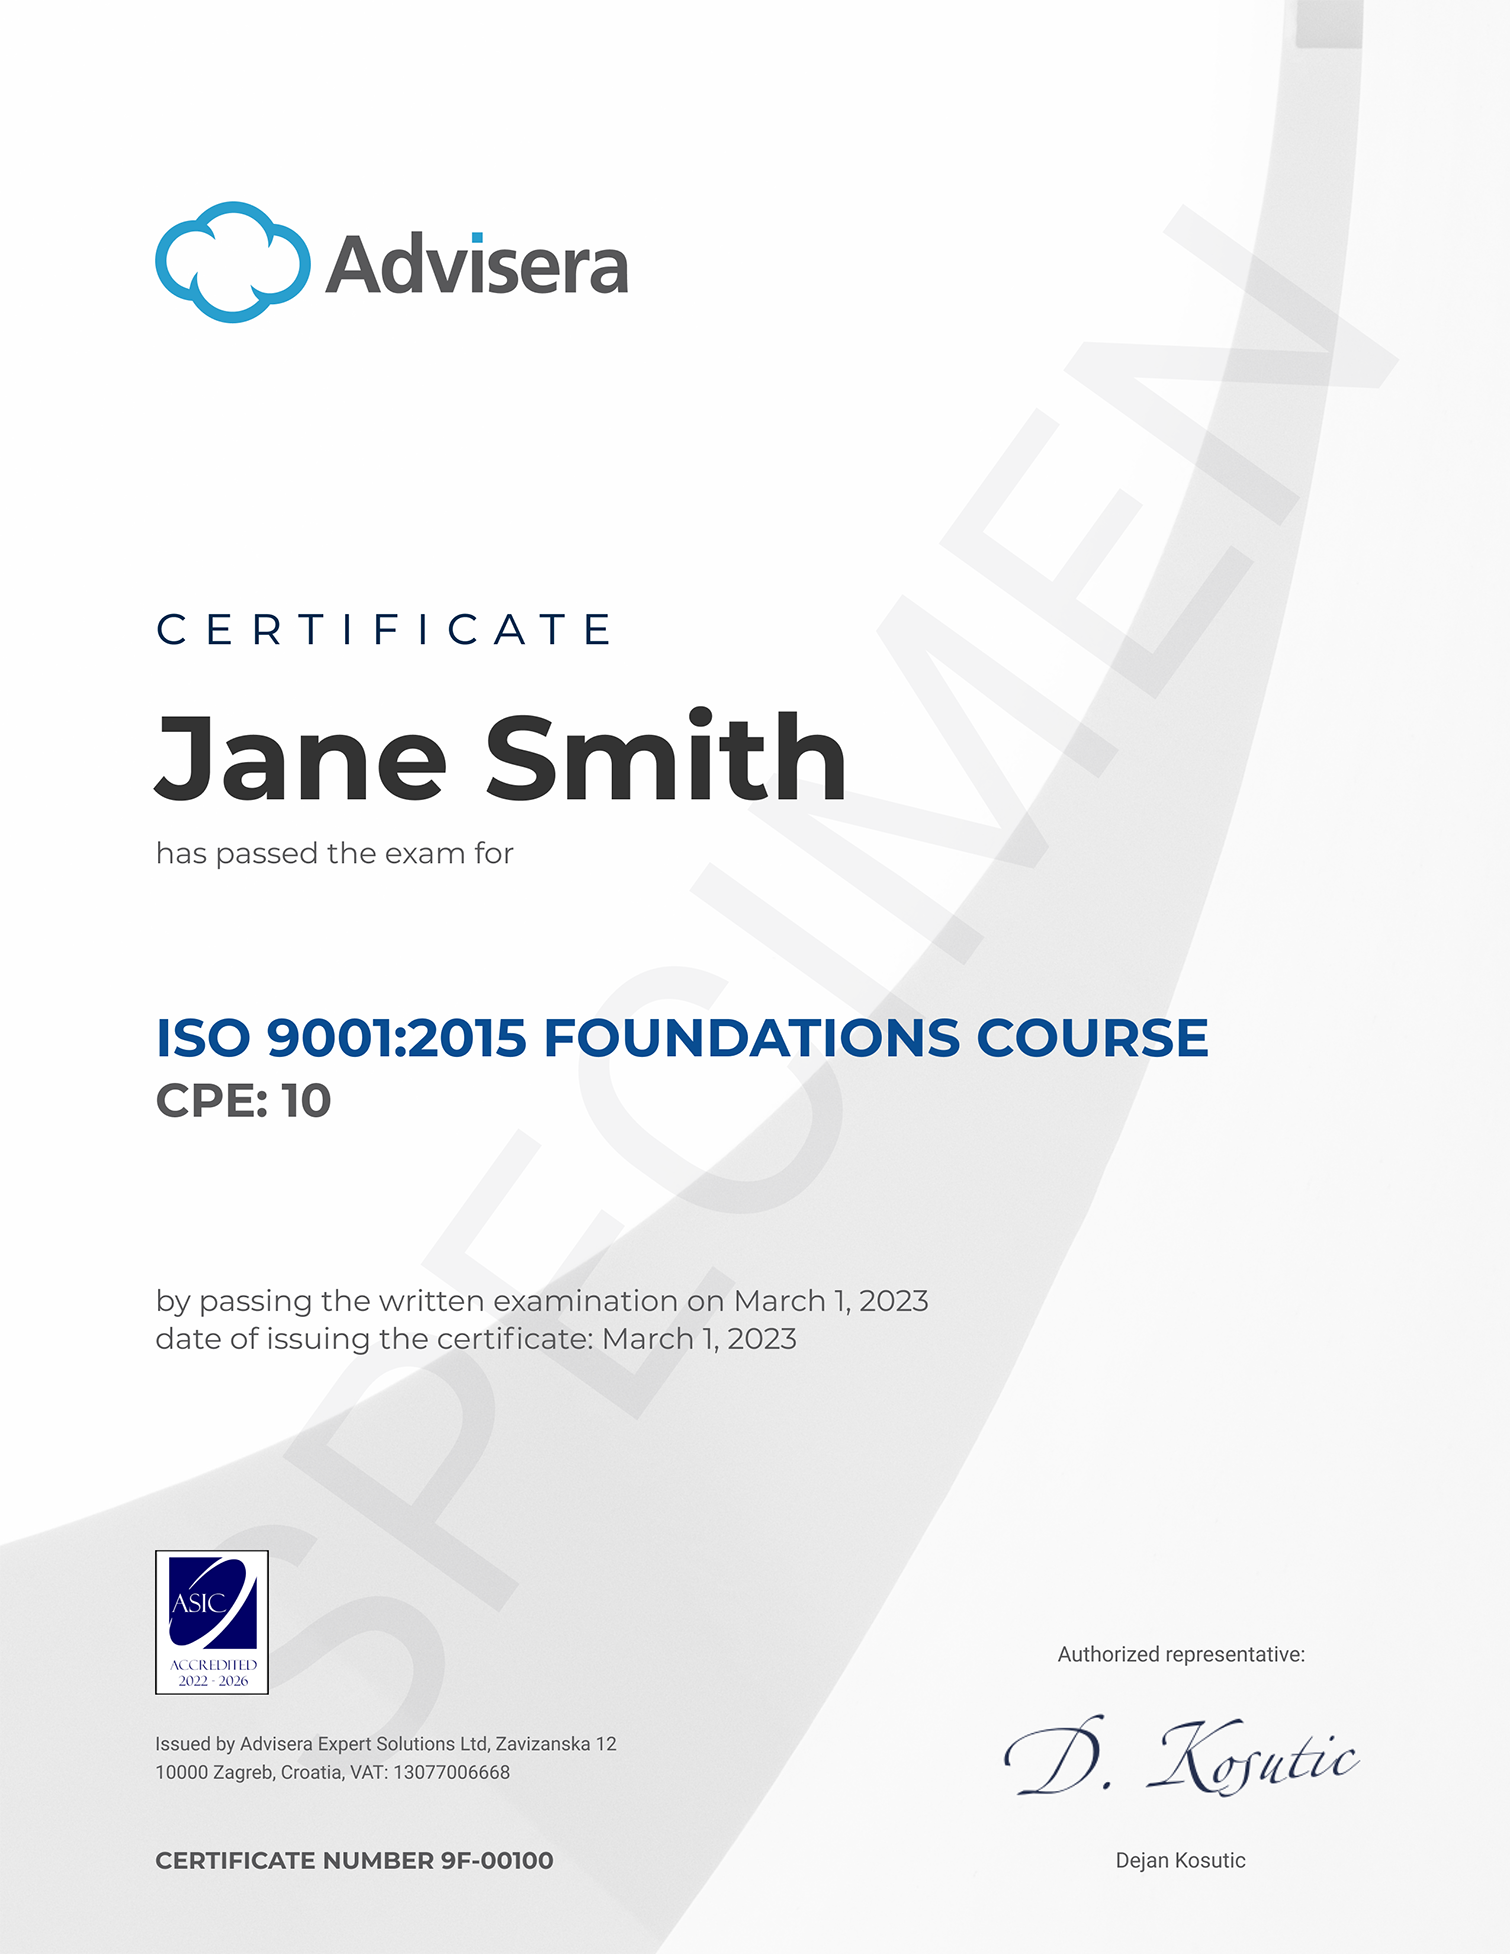 Corso sui Fondamenti della ISO 9001 - Advisera